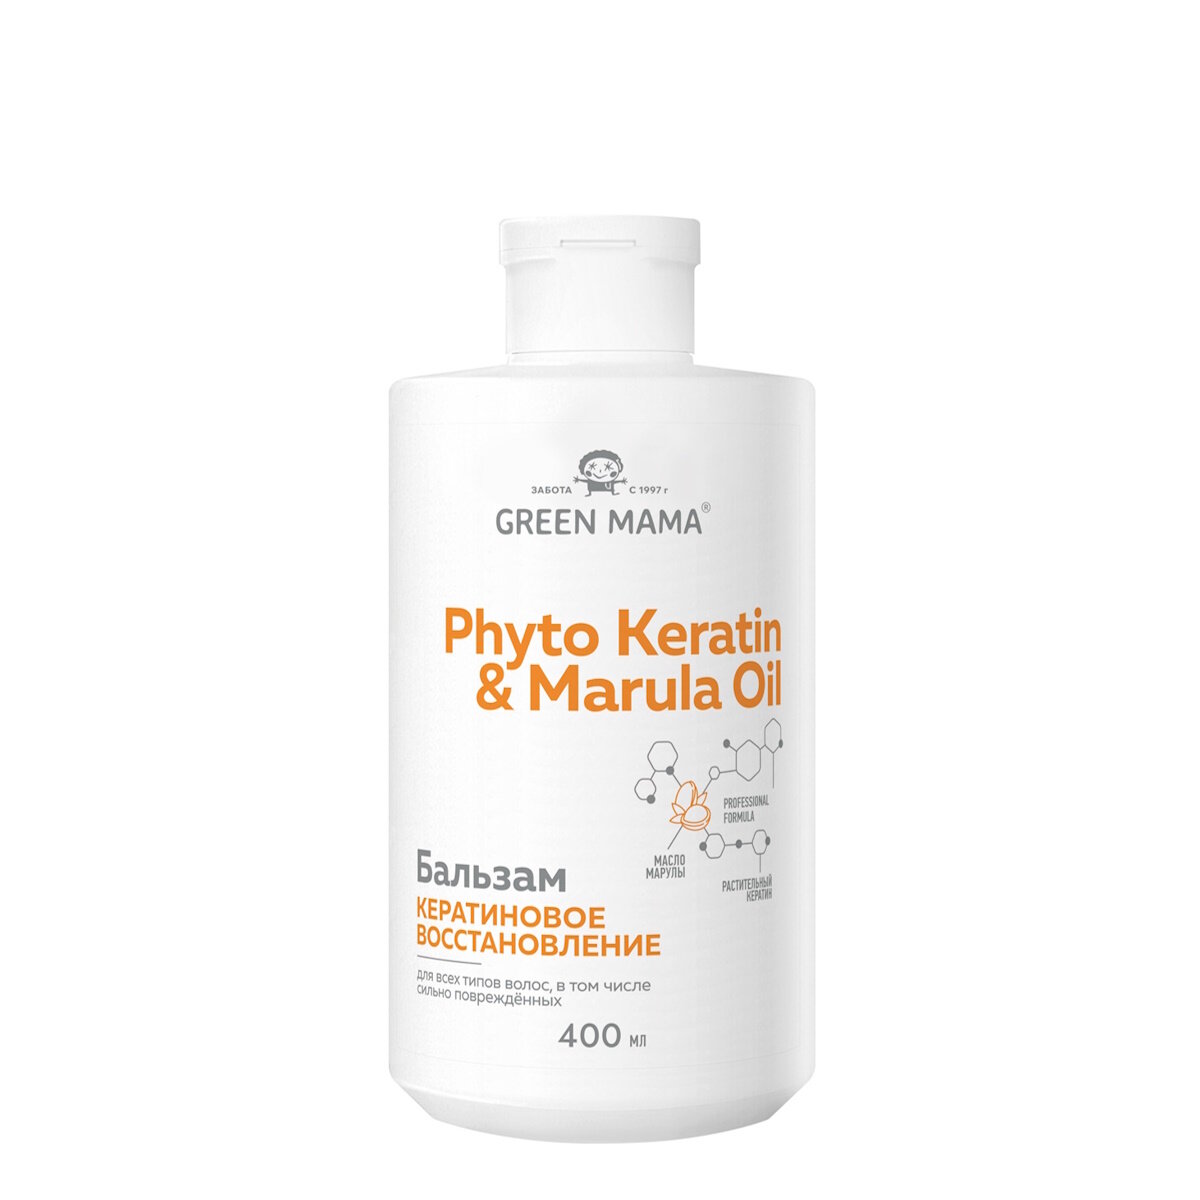 Бальзам PHYTO KERATIN & MARULA OIL для восстановления волос GREEN MAMA с маслом марулы 400 мл